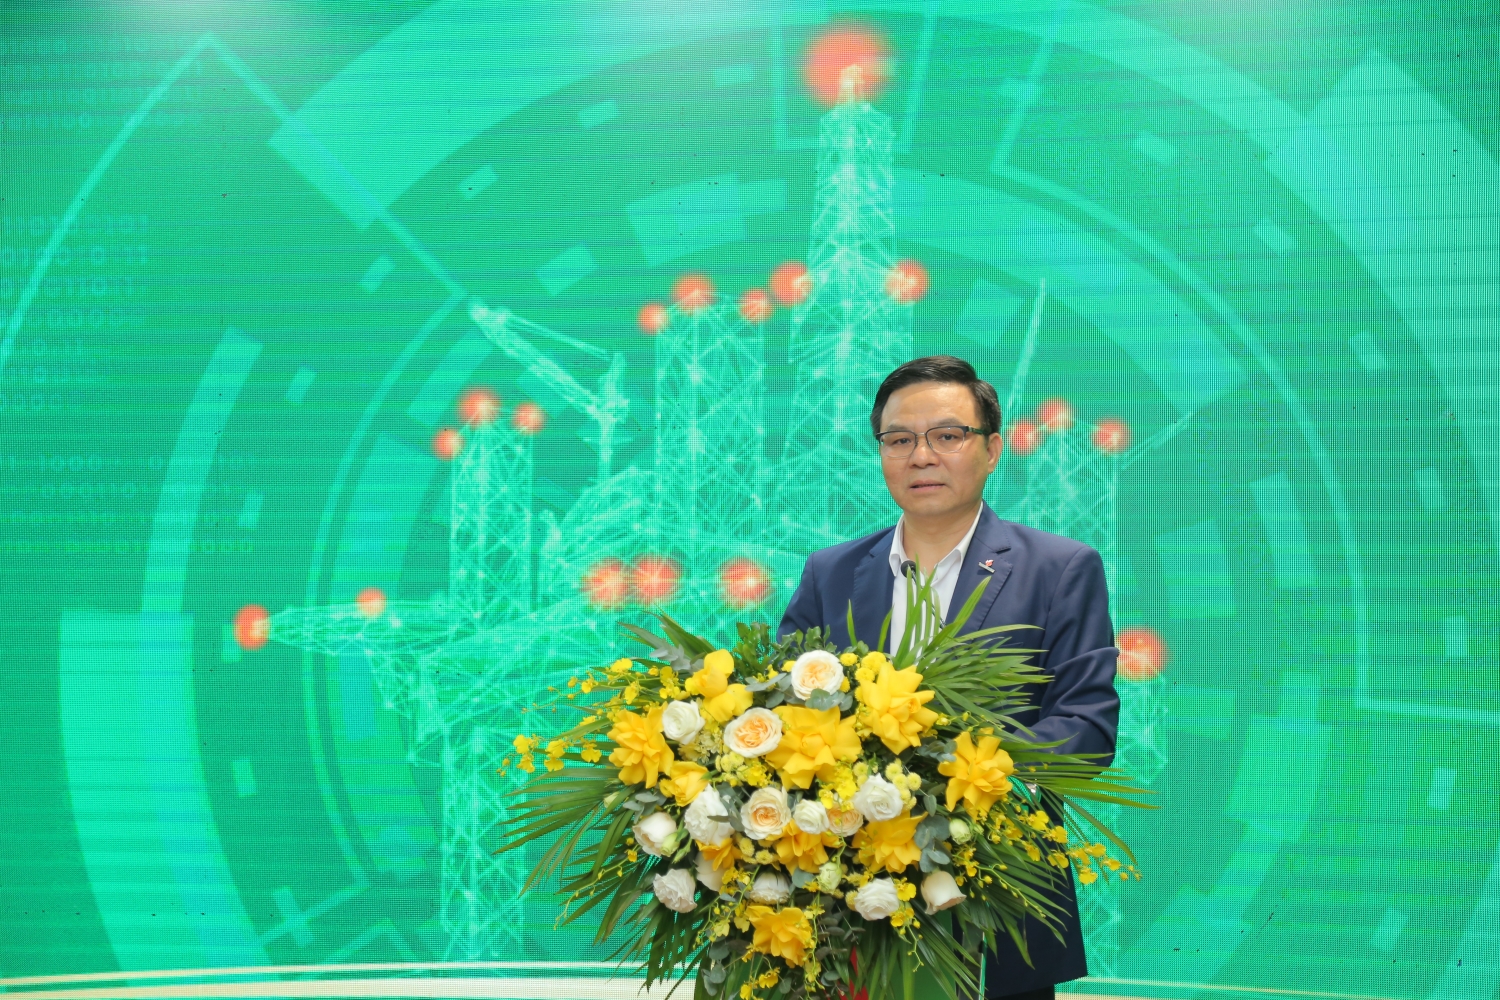 Tổng Giám đốc Petrovietnam Lê Mạnh Hùng: “Chuyển đổi số là xu thế tất yếu, không ai đứng ngoài cuộc” - Ảnh 3.